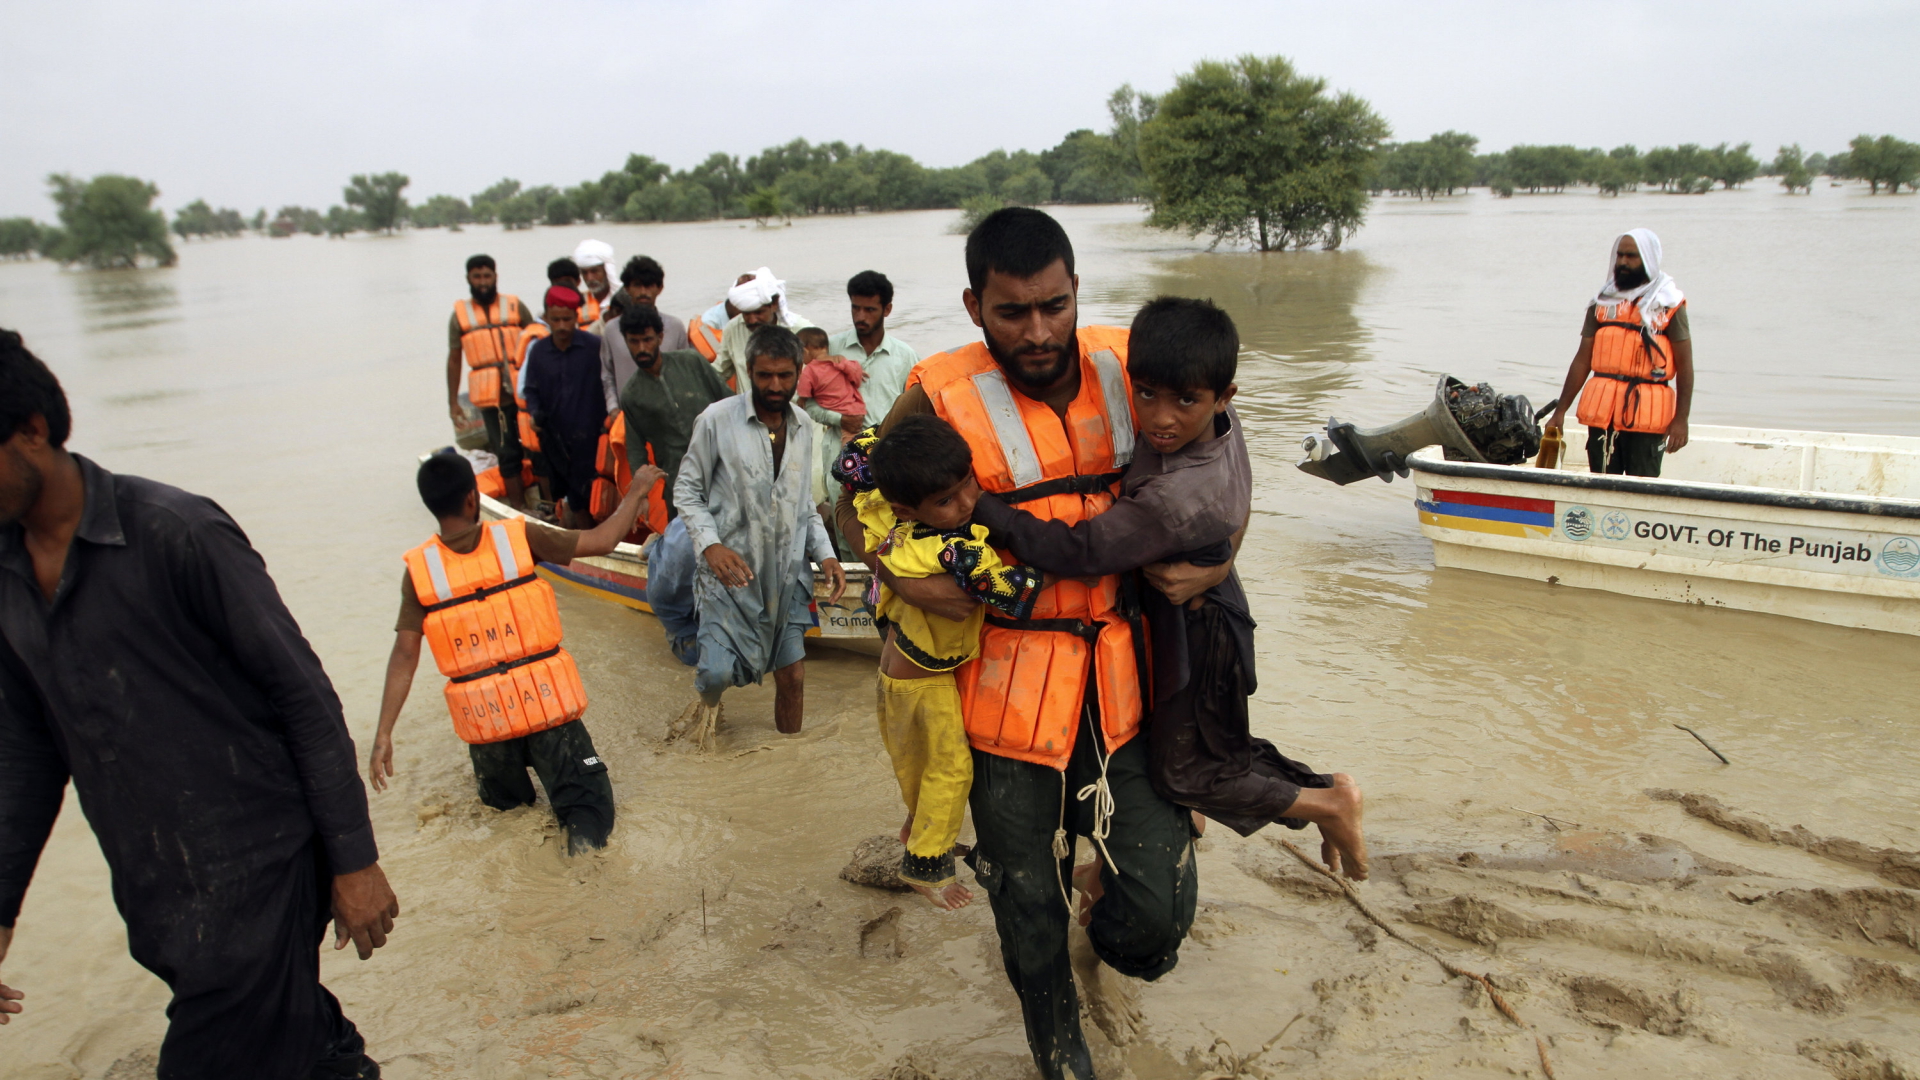 Armeeangehörige evakuieren Menschen aus einem überschwemmten Gebiet im pakistanischen Rajanpur.